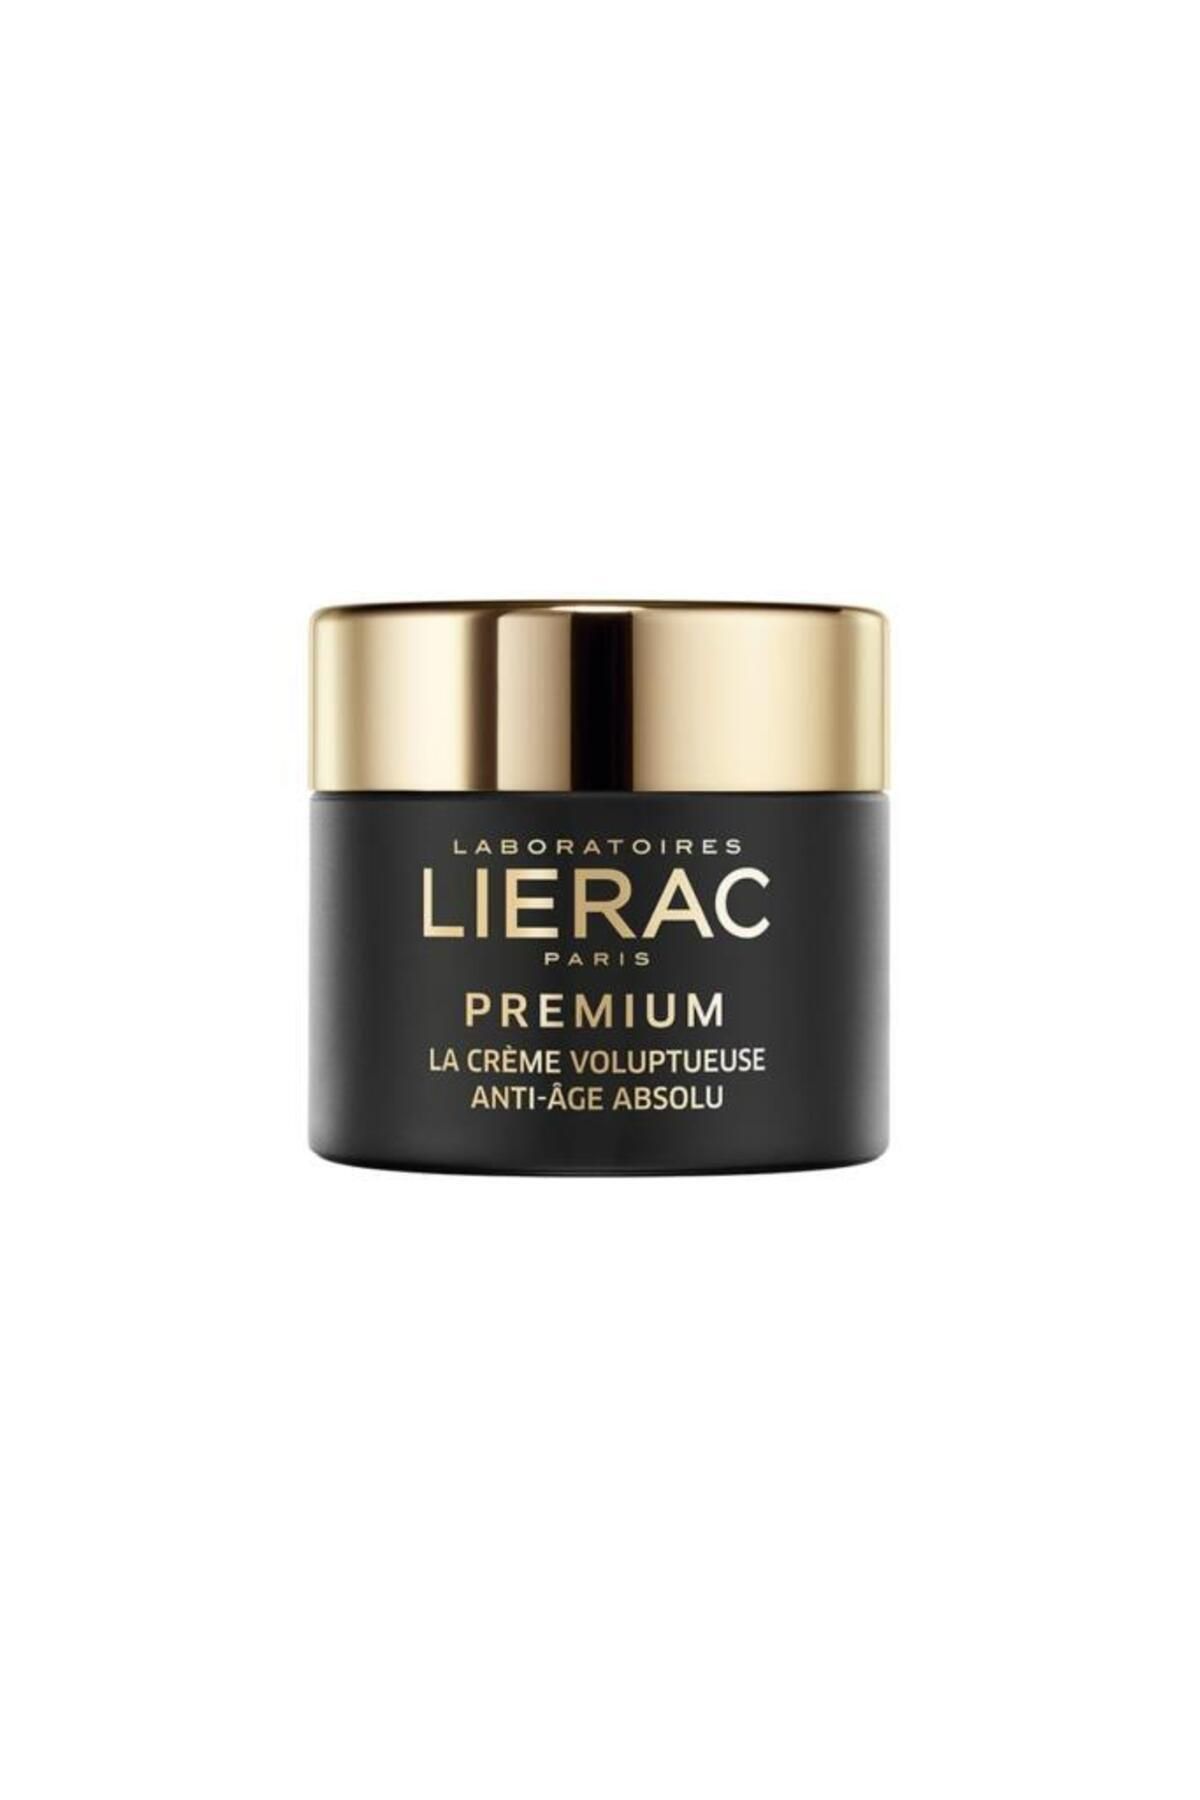 Lierac Premium The Voluptuous Cream 50 Ml